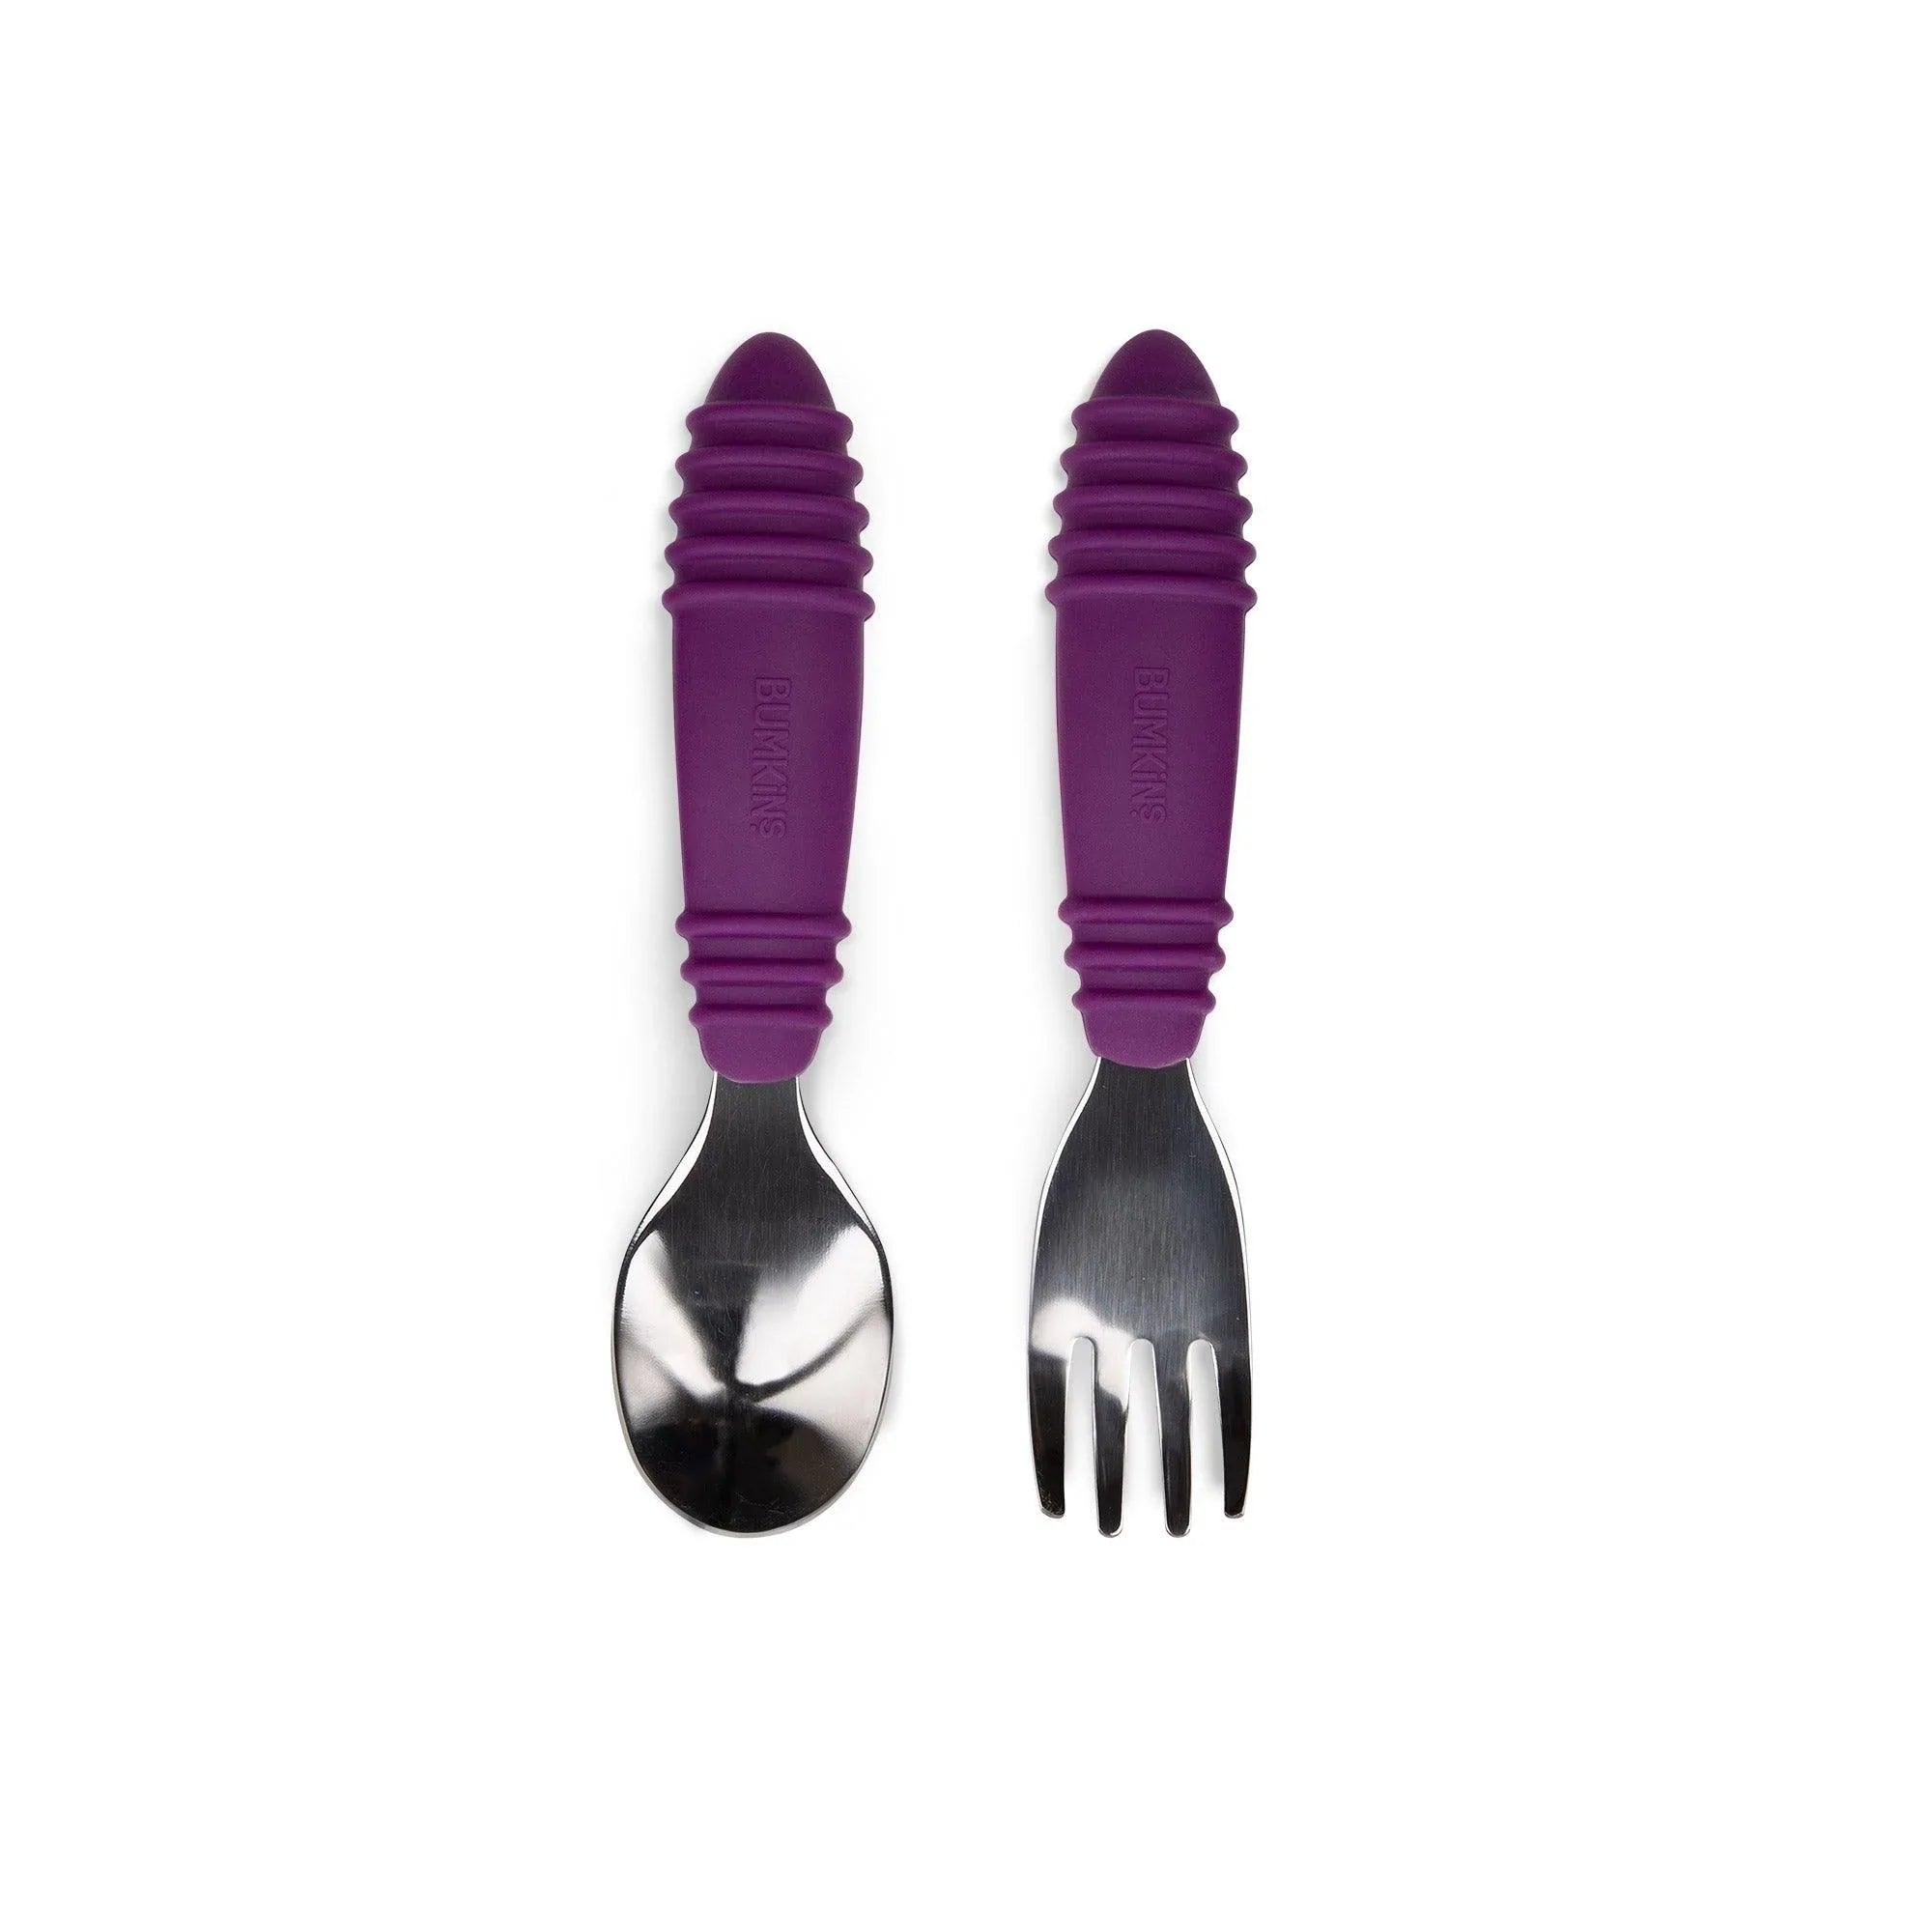 Spoon + Fork: Purple - Bumkins